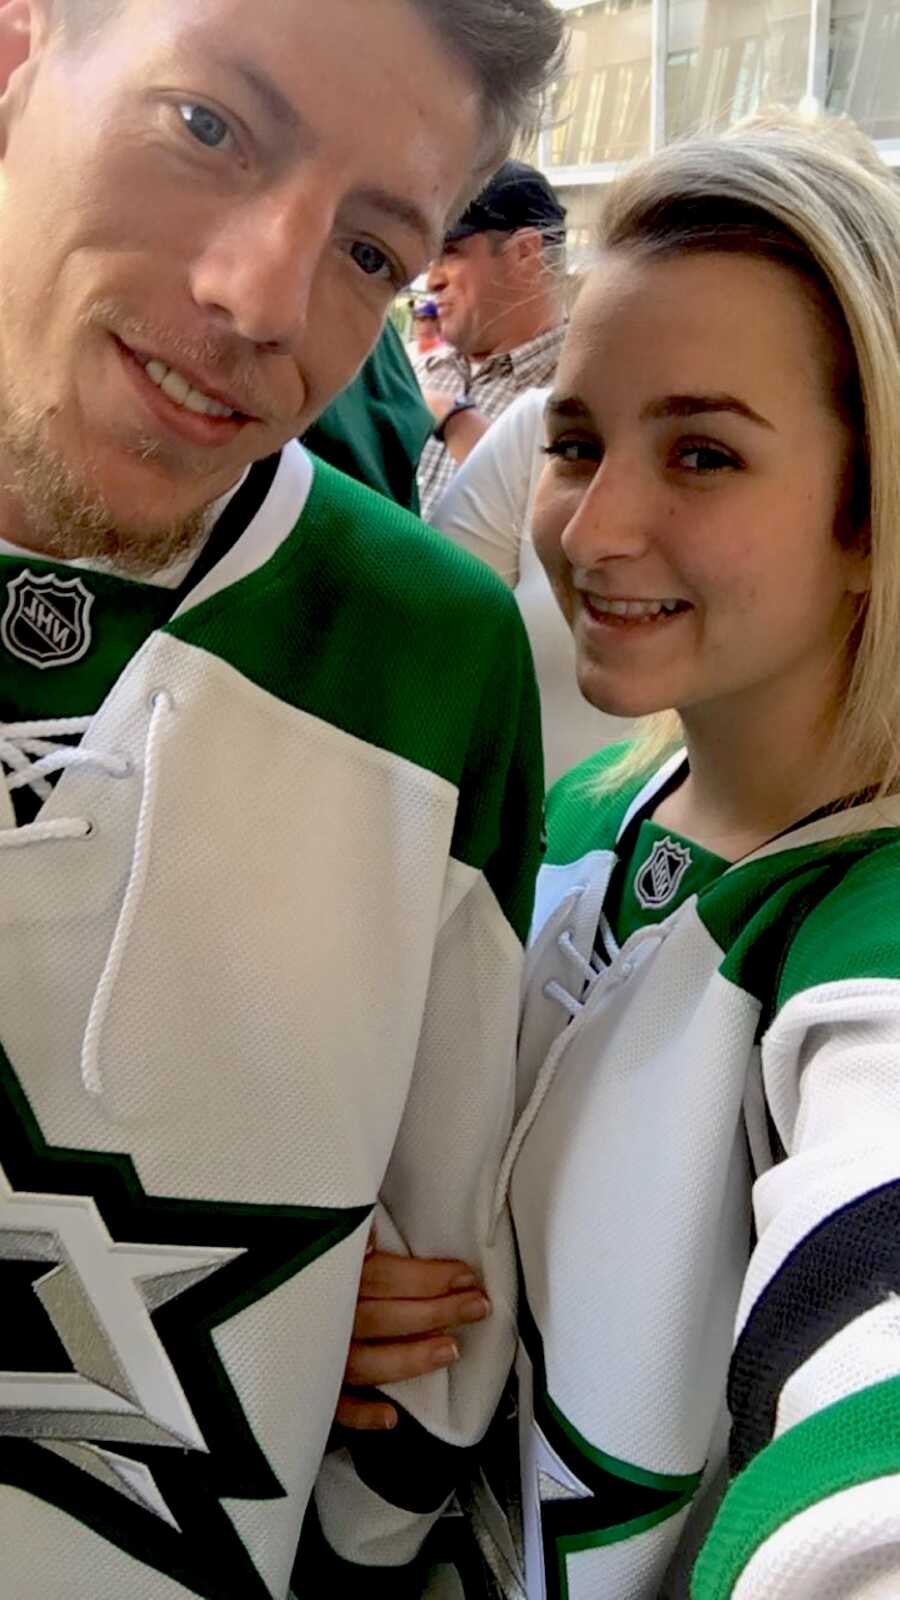 couple take a selfie wearing hockey jerseys